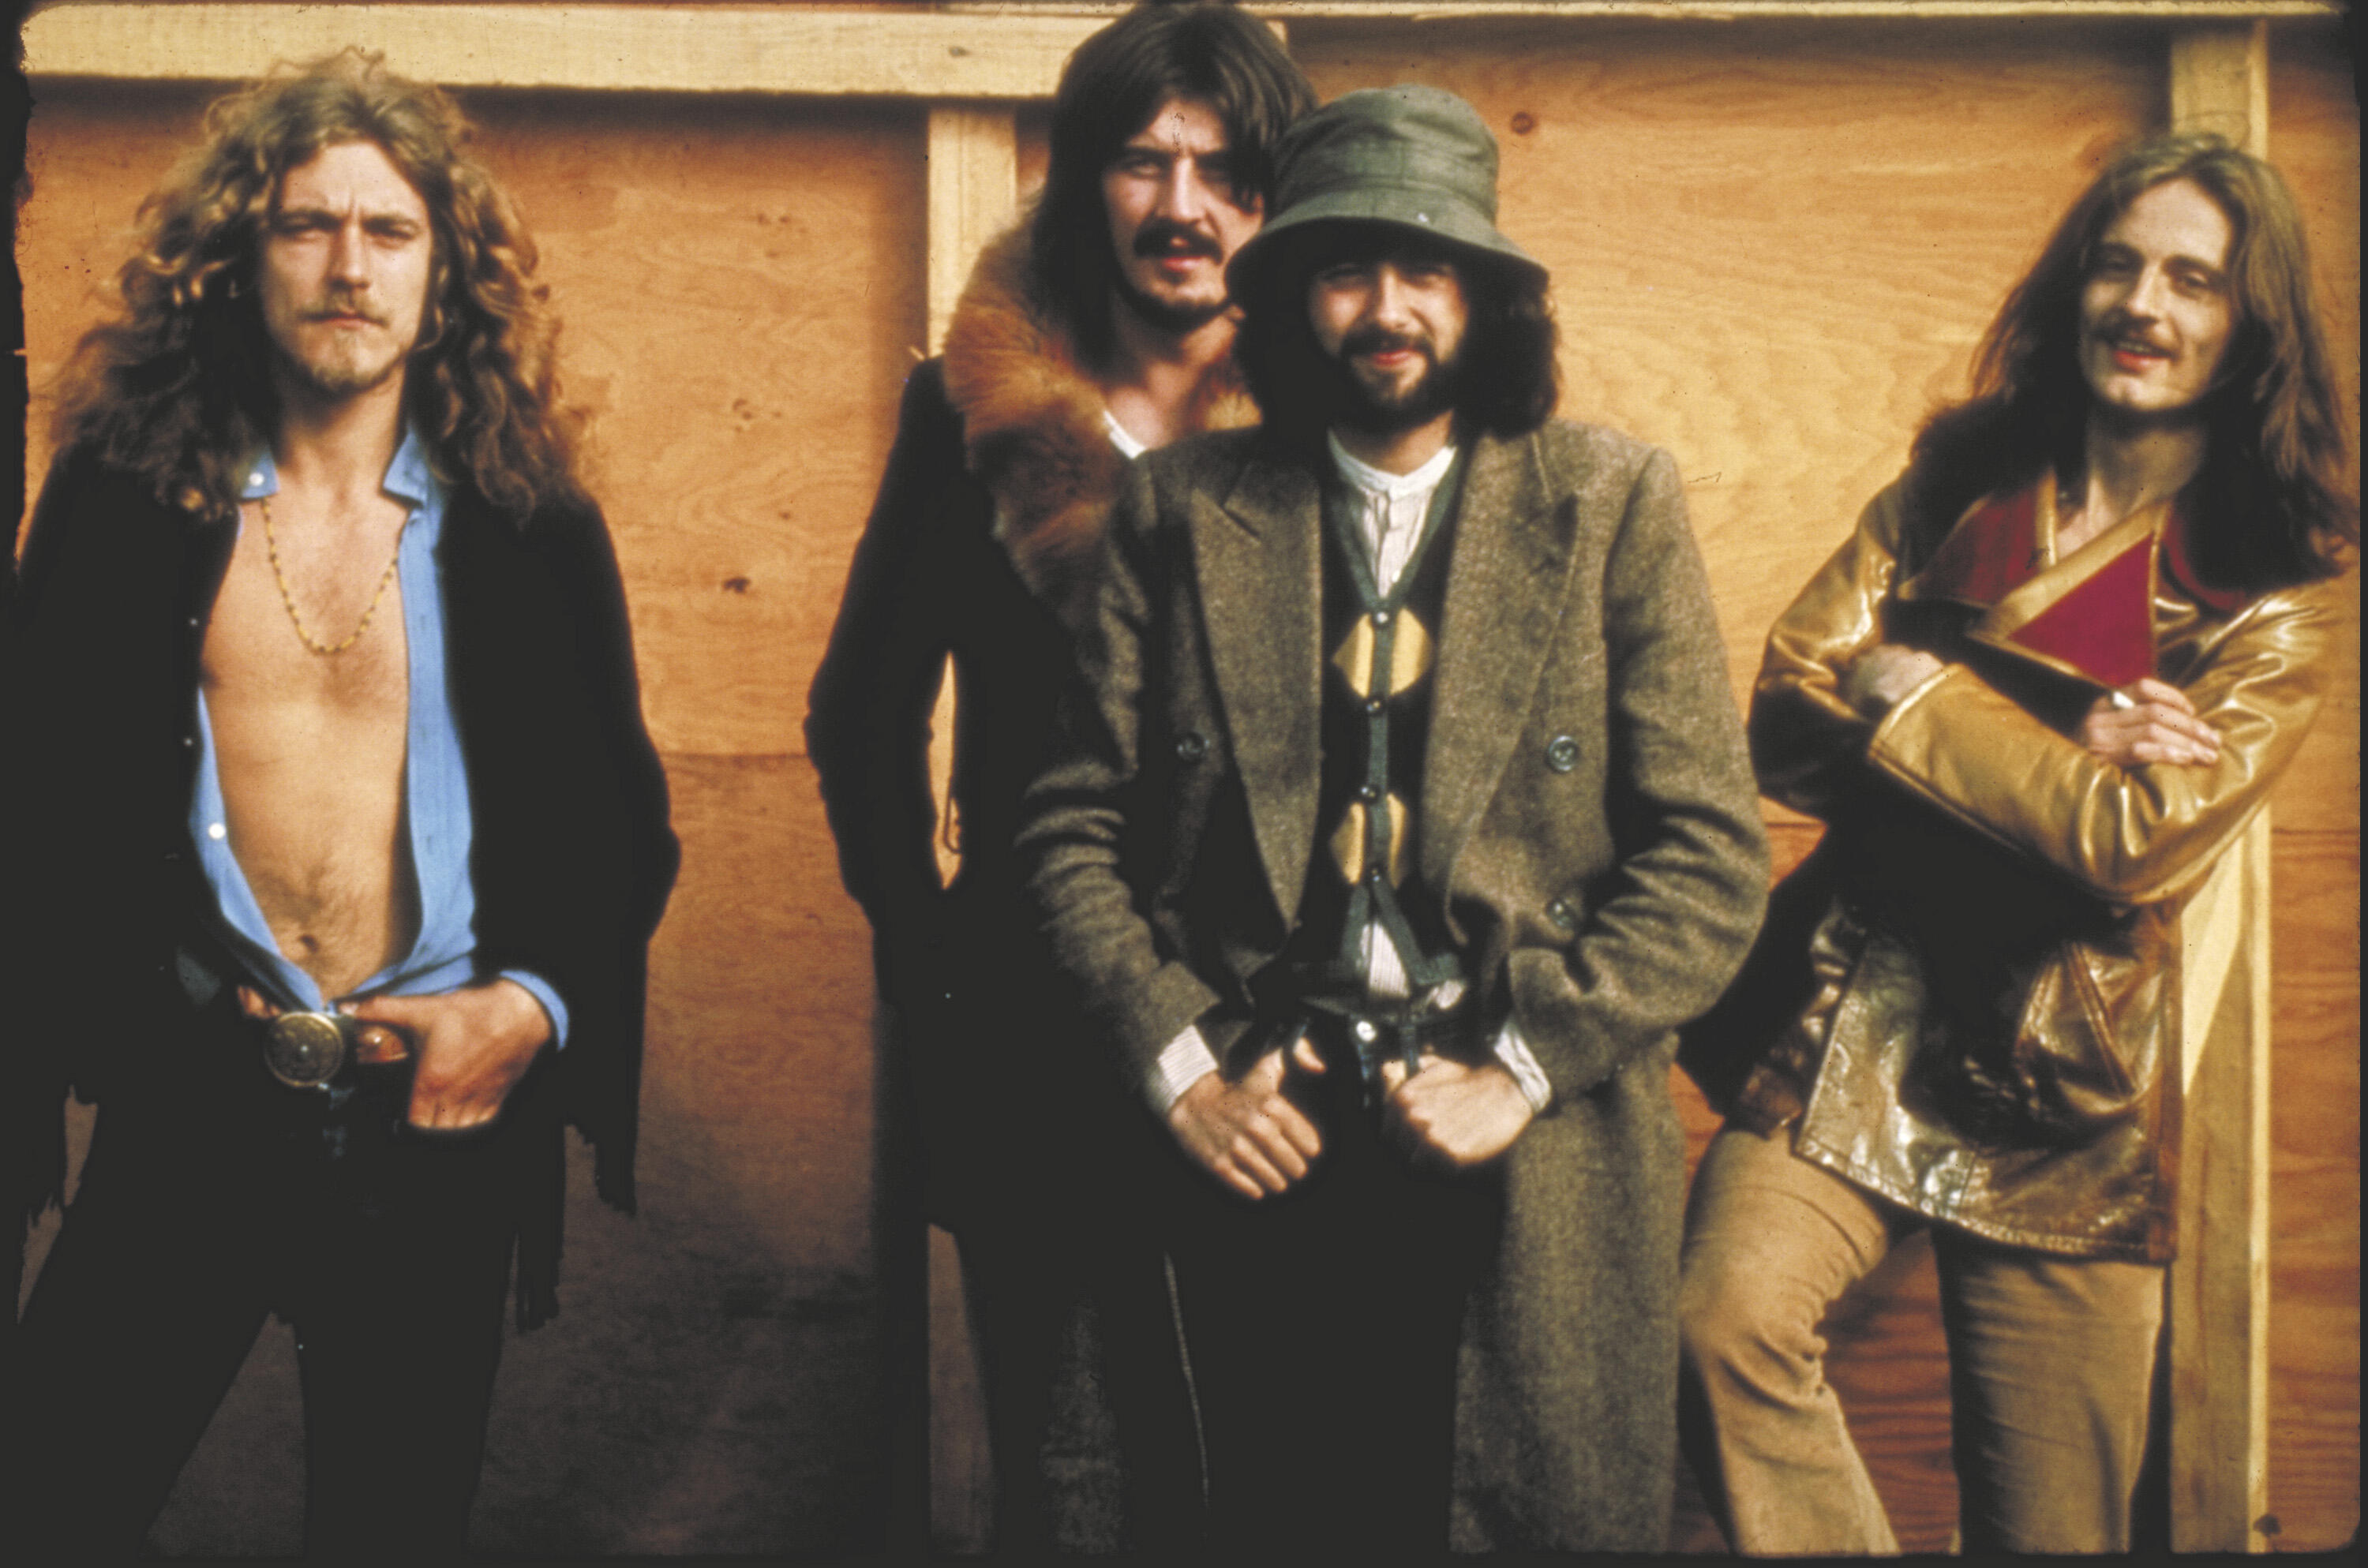 Лед зеппелин лучшие песни слушать. Группа led Zeppelin. Led Zeppelin фото группы. Группа led Zeppelin Бонэм. Led Zeppelin 70.